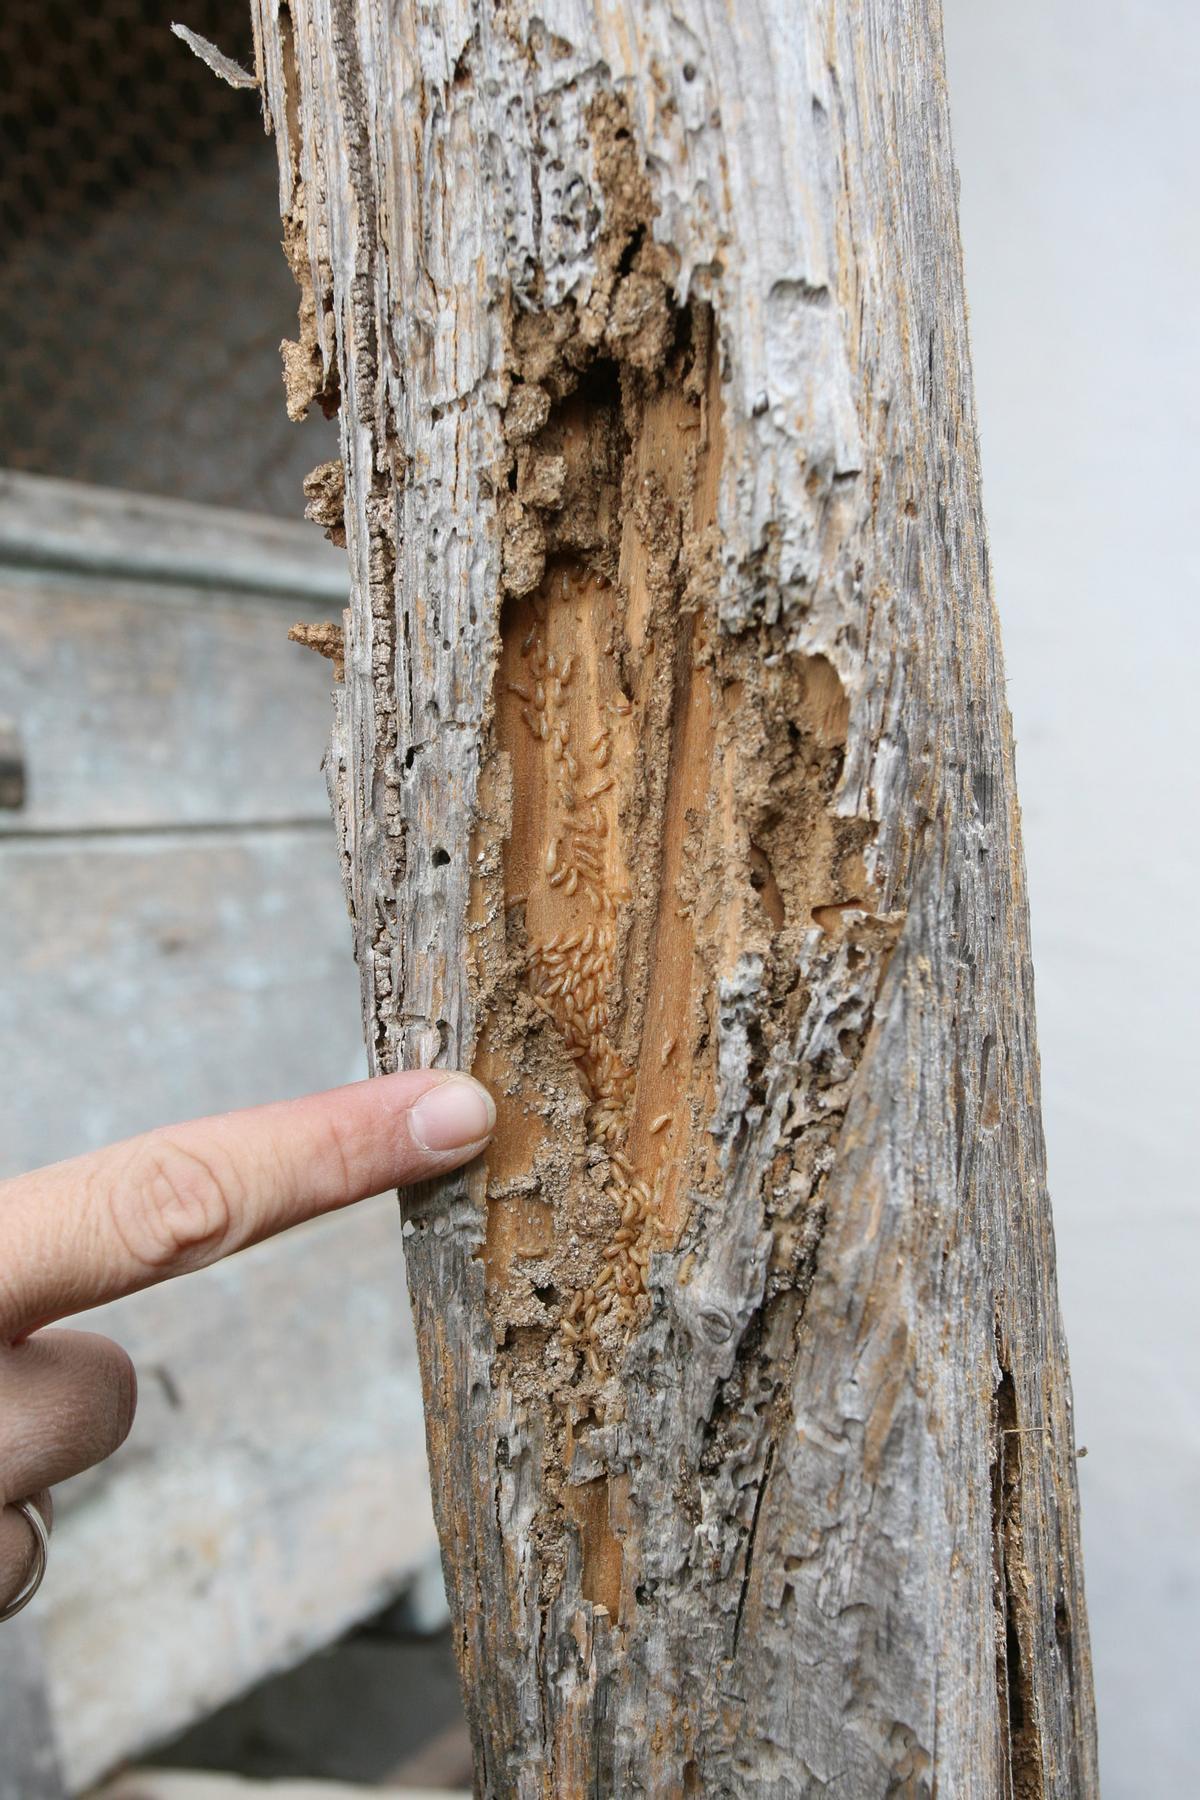 Aspecto de la madera cuando ha sido atacada por termitas.